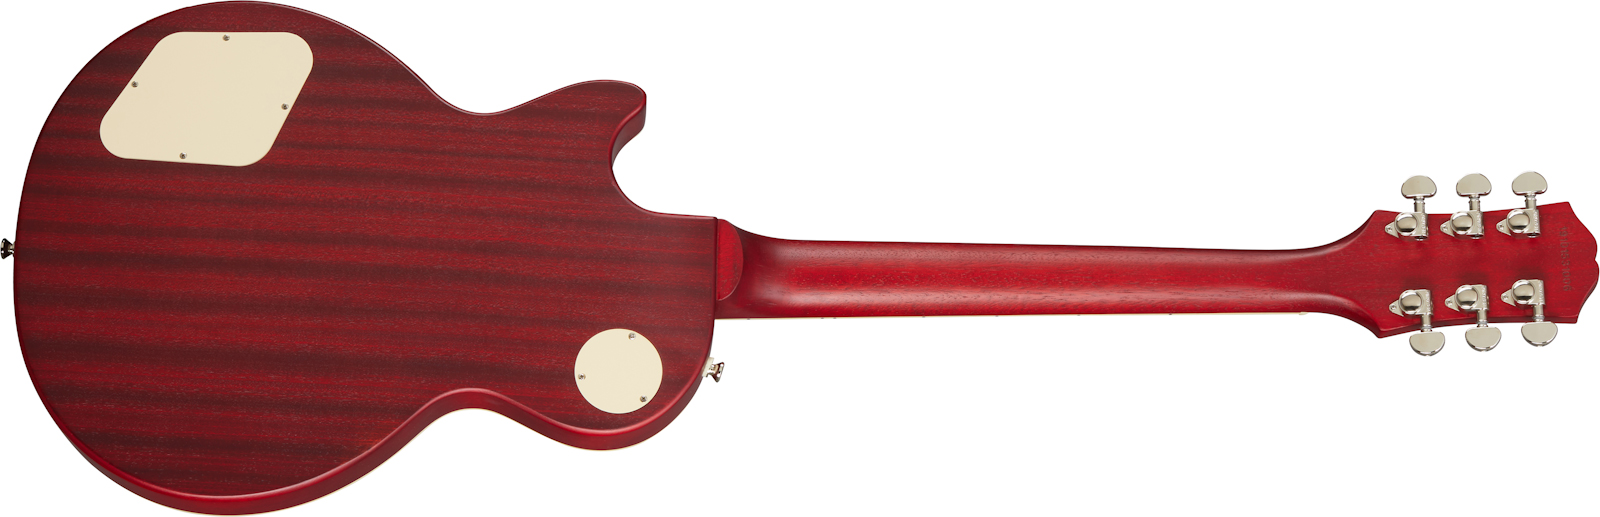 Epiphone Les Paul Classic Worn 2020 Hh Ht Rw - Worn Heritage Cherry Sunburst - Enkel gesneden elektrische gitaar - Variation 1